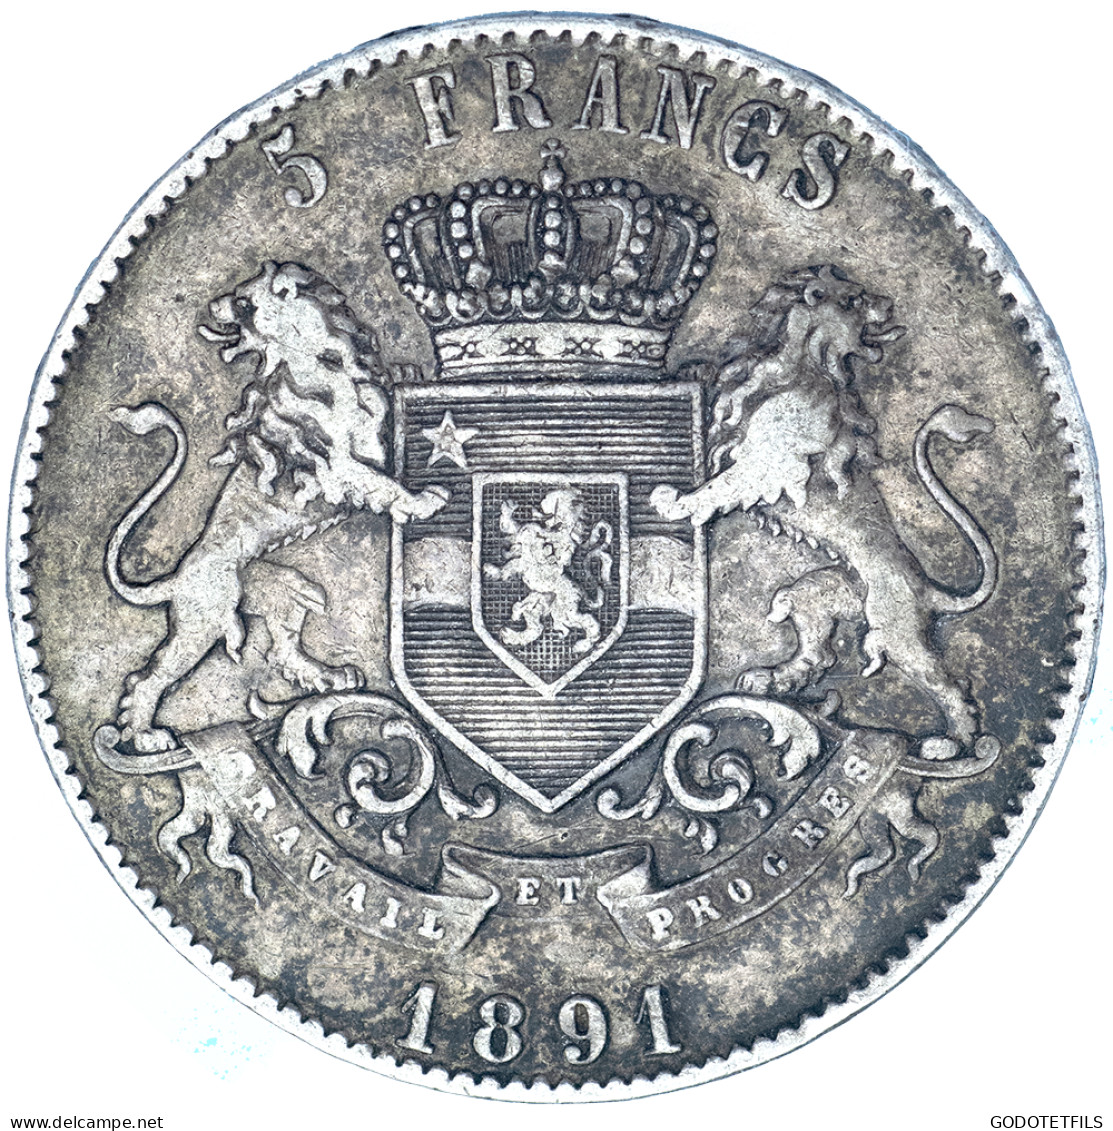 Belgique-Etat Indépendant Du Congo-5 Francs Léopold II 1891 Bruxelles - 1885-1909: Leopoldo II